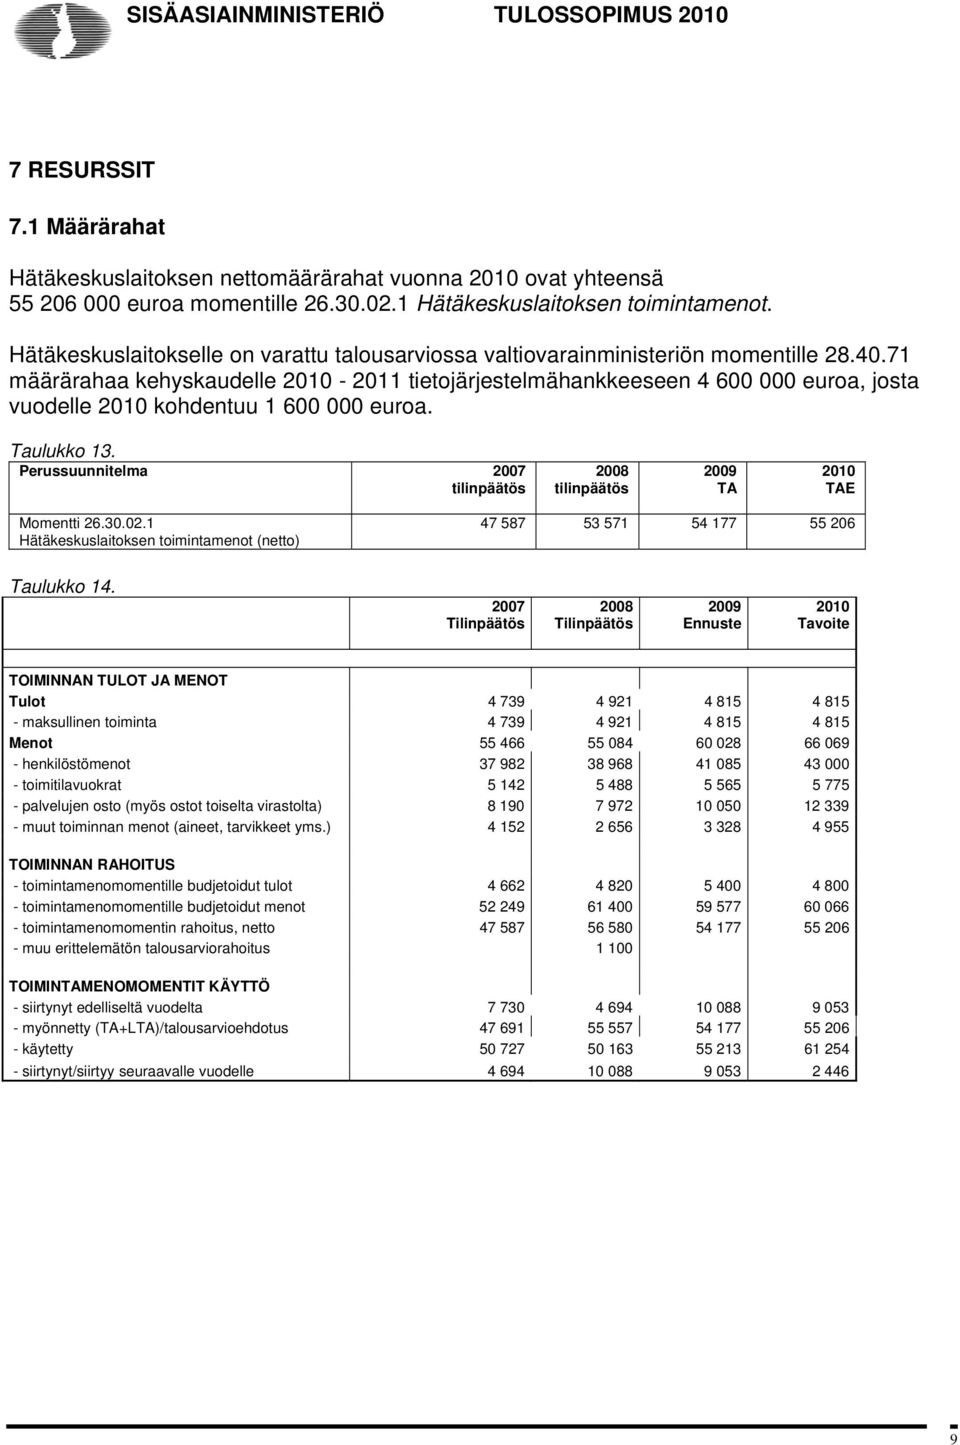 71 määrärahaa kehyskaudelle 2010-2011 tietojärjestelmähankkeeseen 4 600 000 euroa, josta vuodelle 2010 kohdentuu 1 600 000 euroa. Taulukko 13.